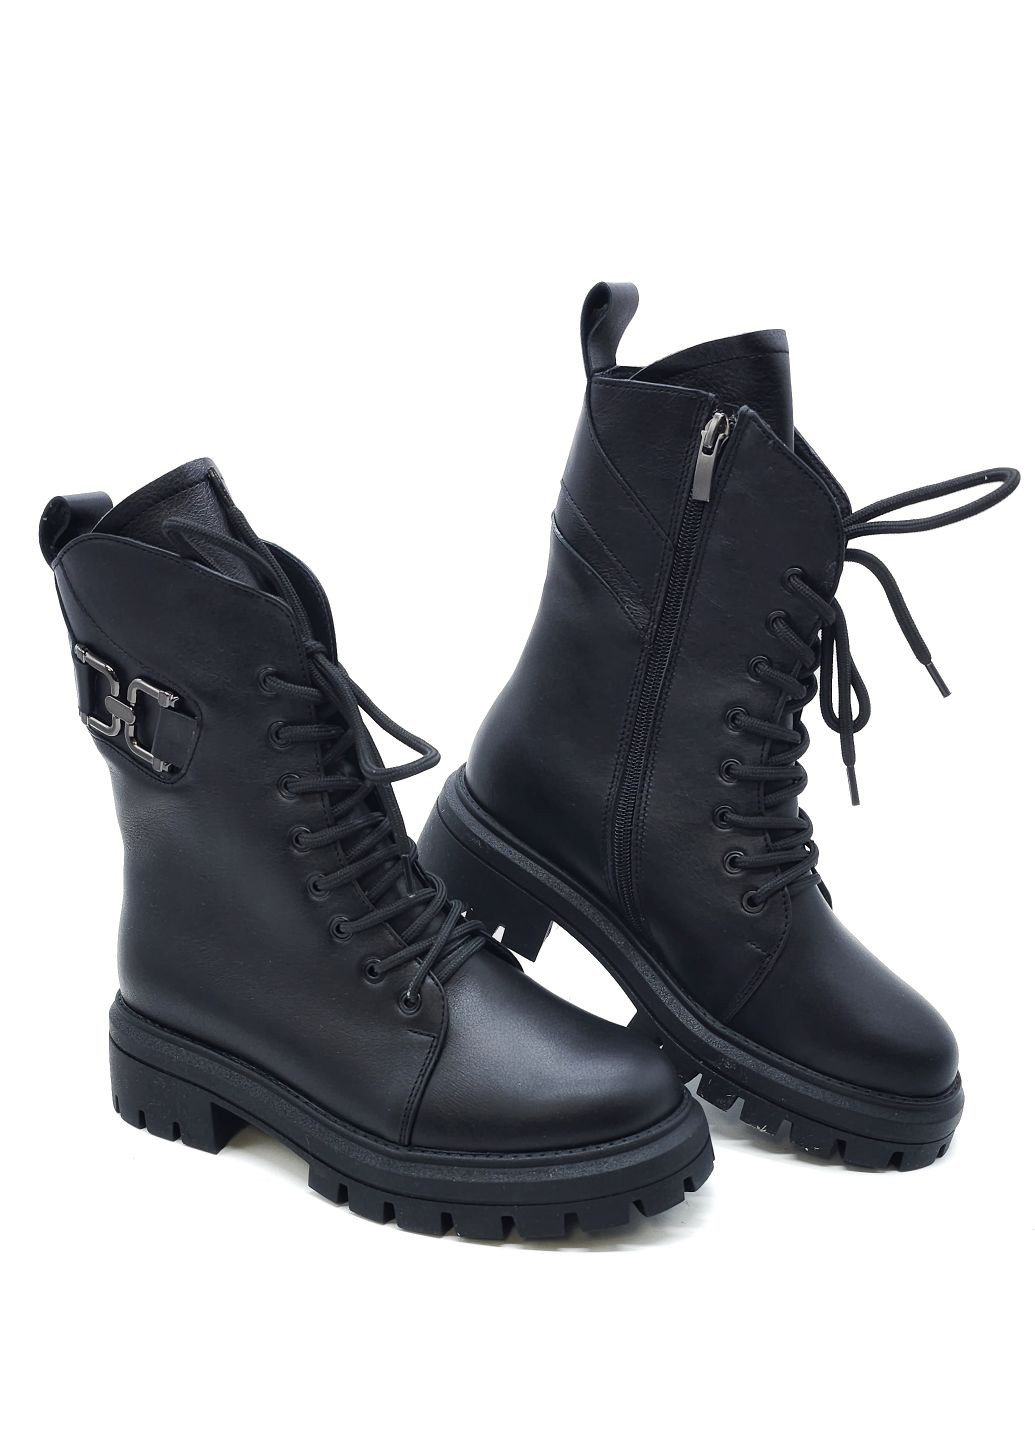 Жіночі черевики зимові чорні шкіряні FS-14-18 23,5 см (р) Foot Step (271828028)